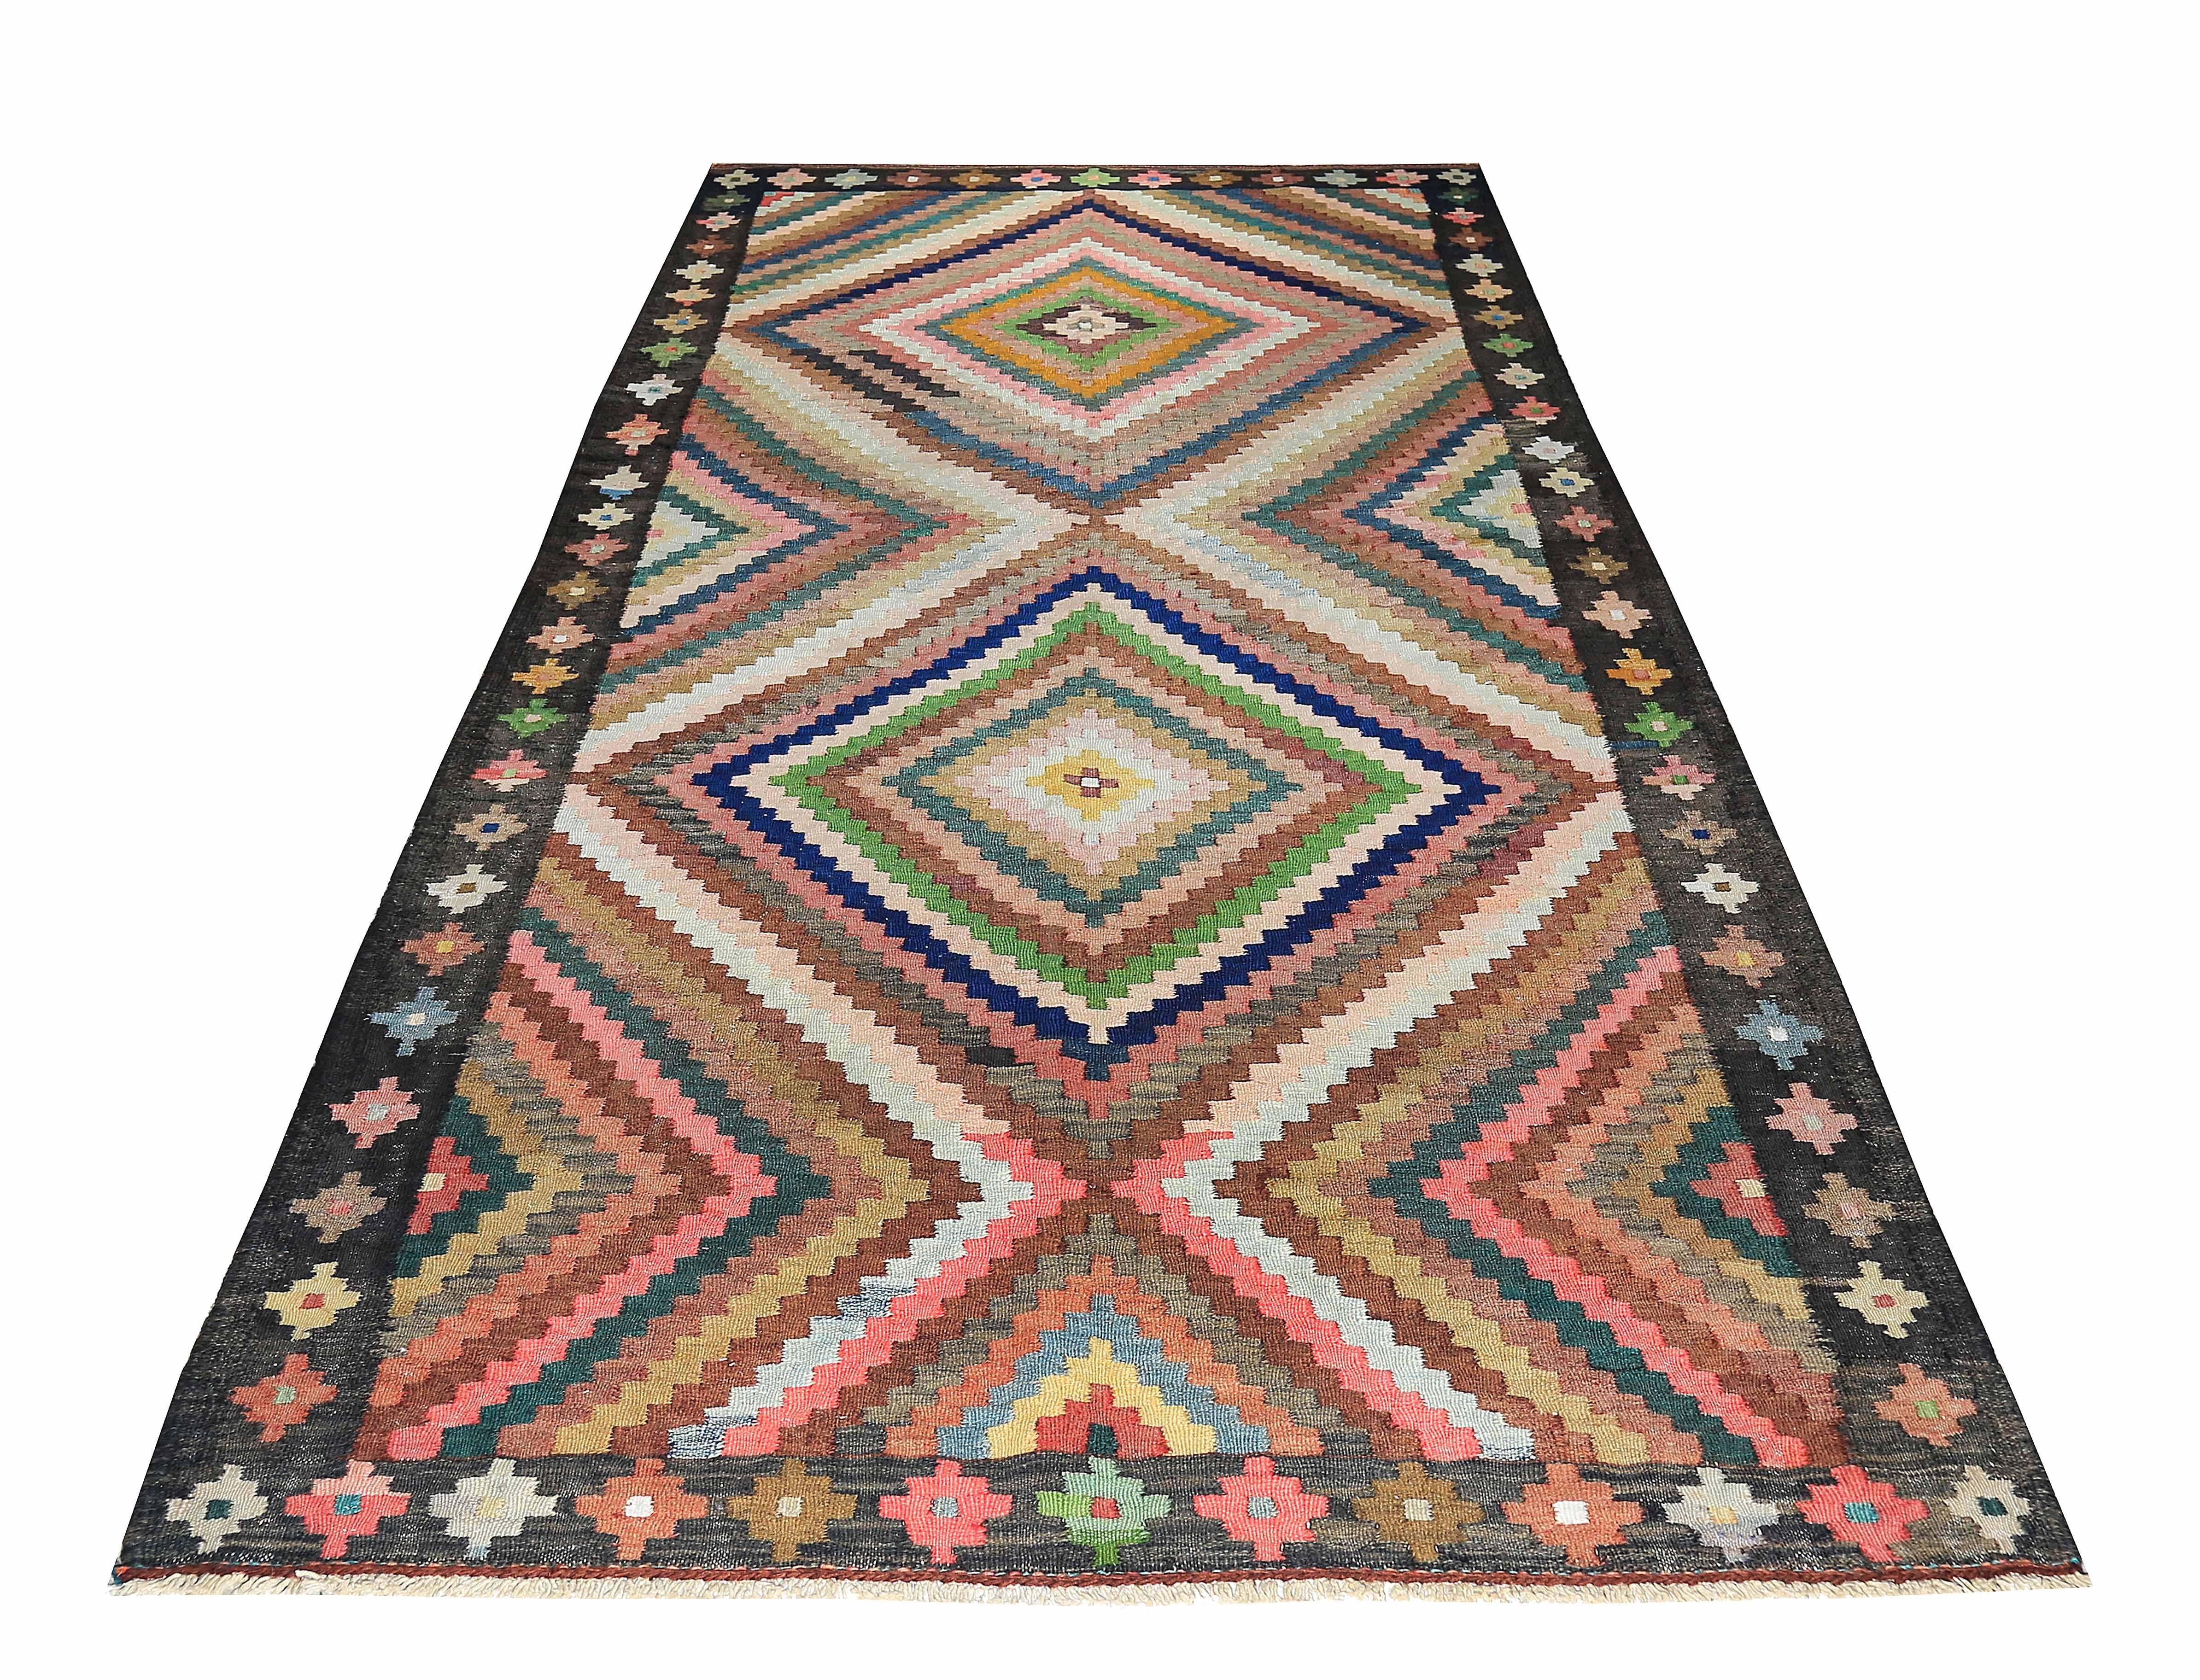 Türkischer Teppich, handgewebt aus feinster Schafswolle und gefärbt mit natürlichen Pflanzenfarben, die für Menschen und Haustiere unbedenklich sind. Es handelt sich um ein traditionelles Kelim-Flachgewebedesign mit lebhaften Farben und